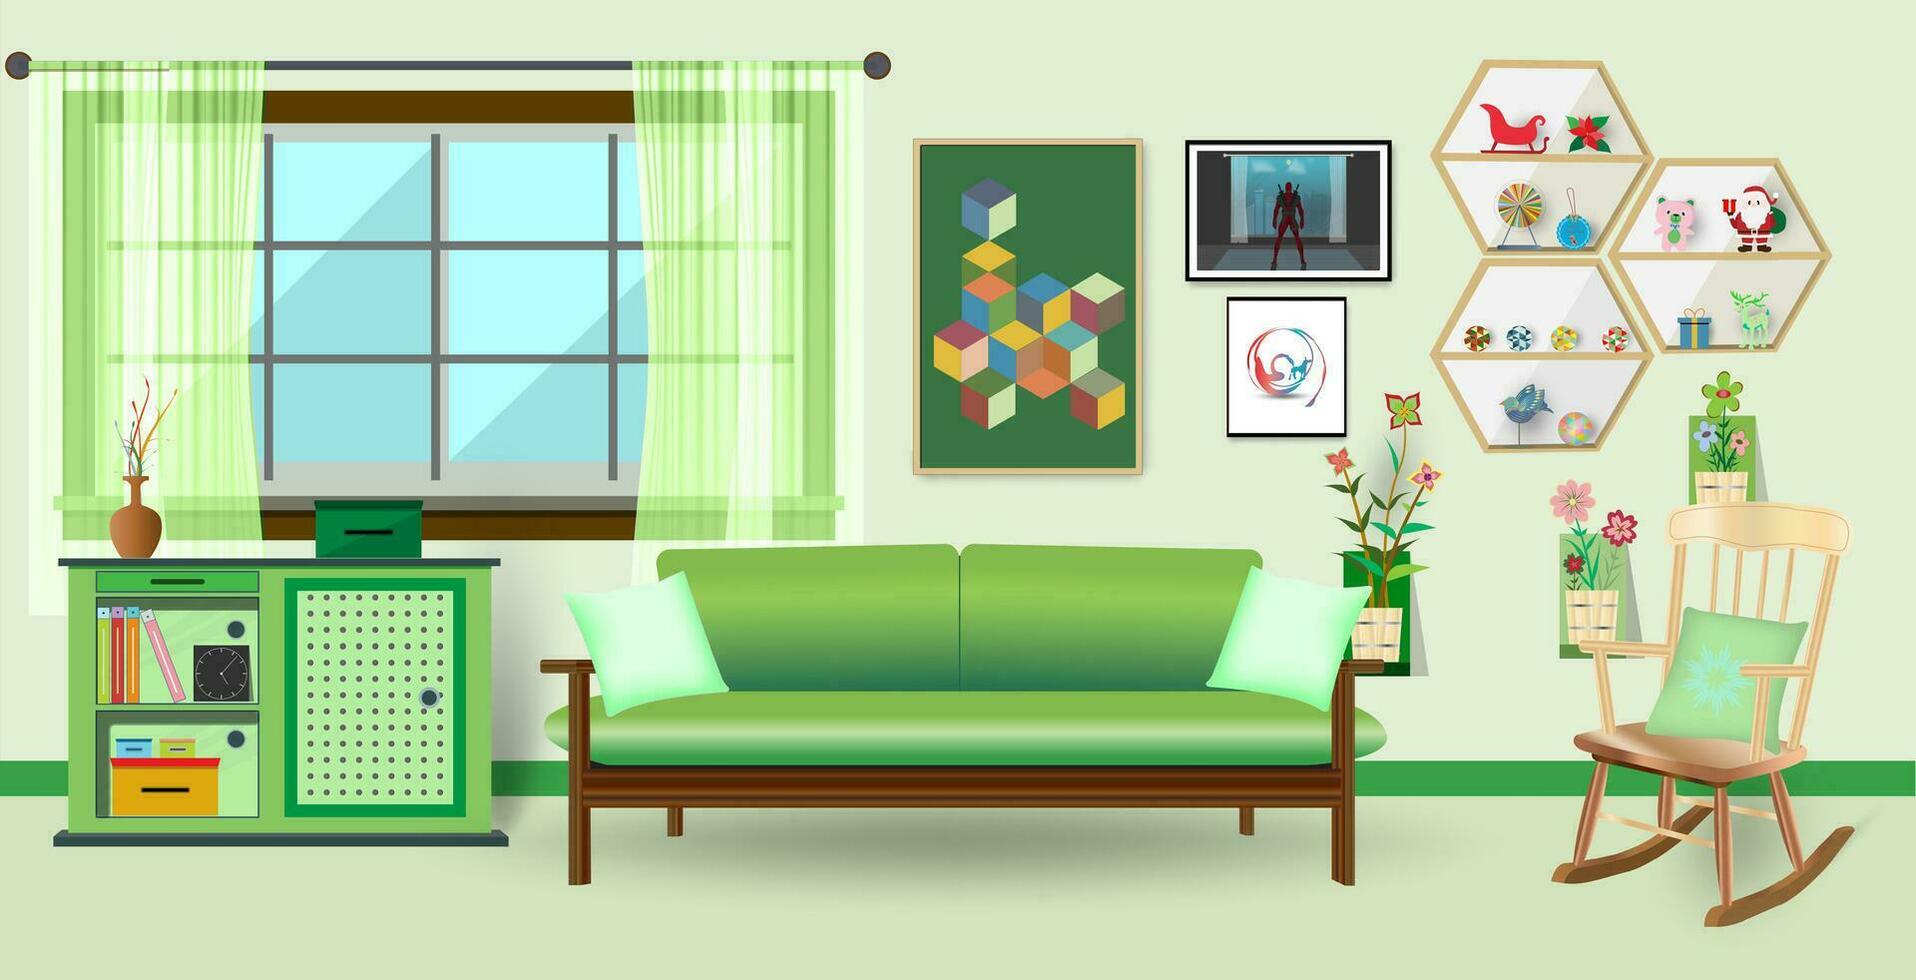 retrò colorato vivente camera interno design. piatto stile vettore illustrazione